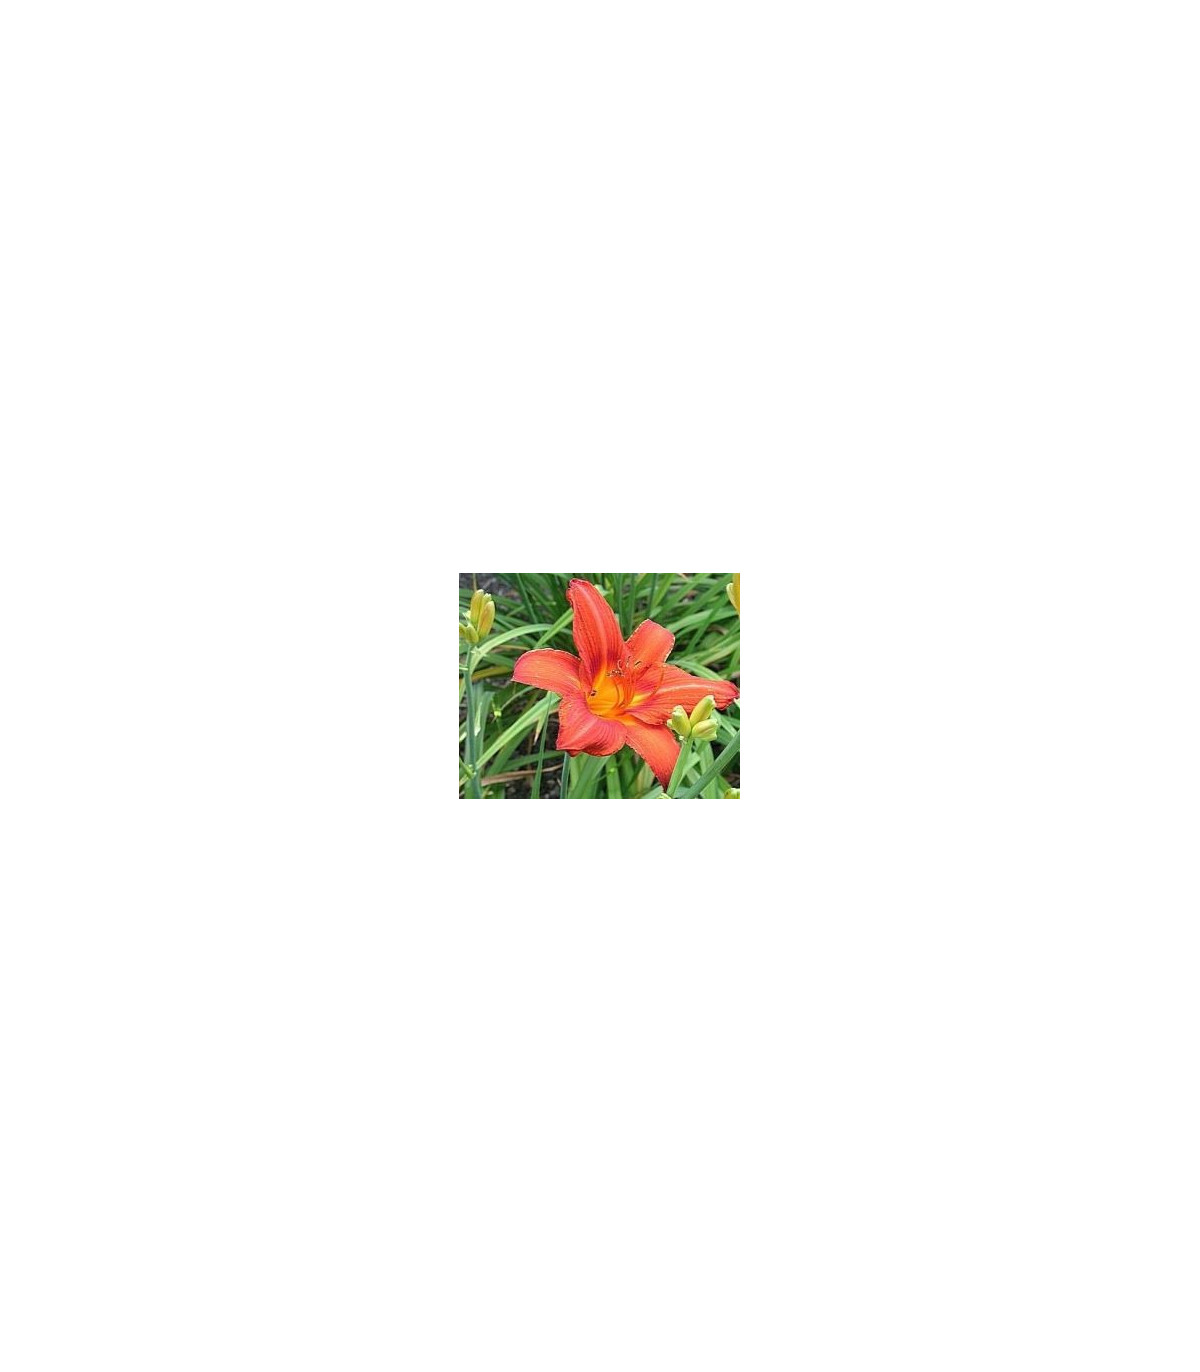 Ľaliovka Red Magic – Hemerocallis – hľuznaté korene ľaliovky